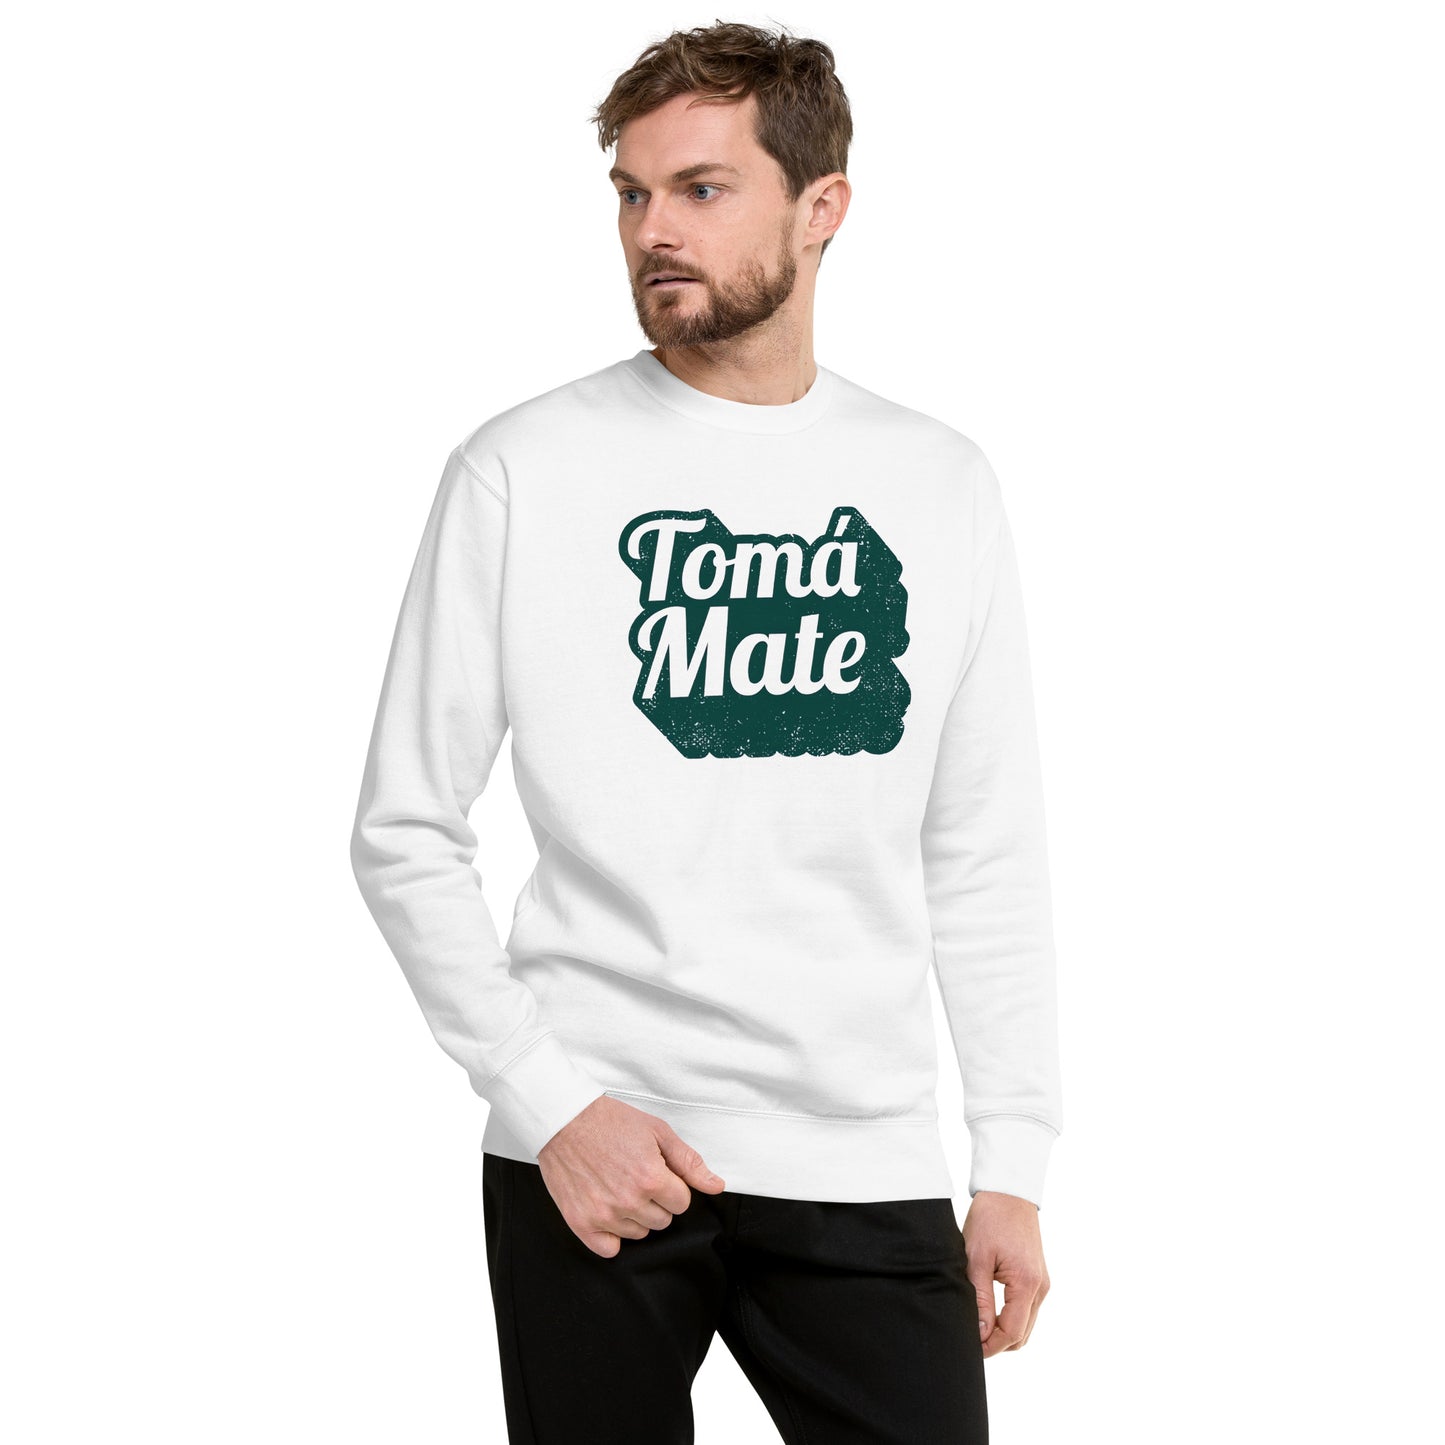 Suéter de Tomá Mate ,Descubre calidad excepcional y estampados duraderos. Encuentra estilo y orgullo en cada prenda. Compra ahora!